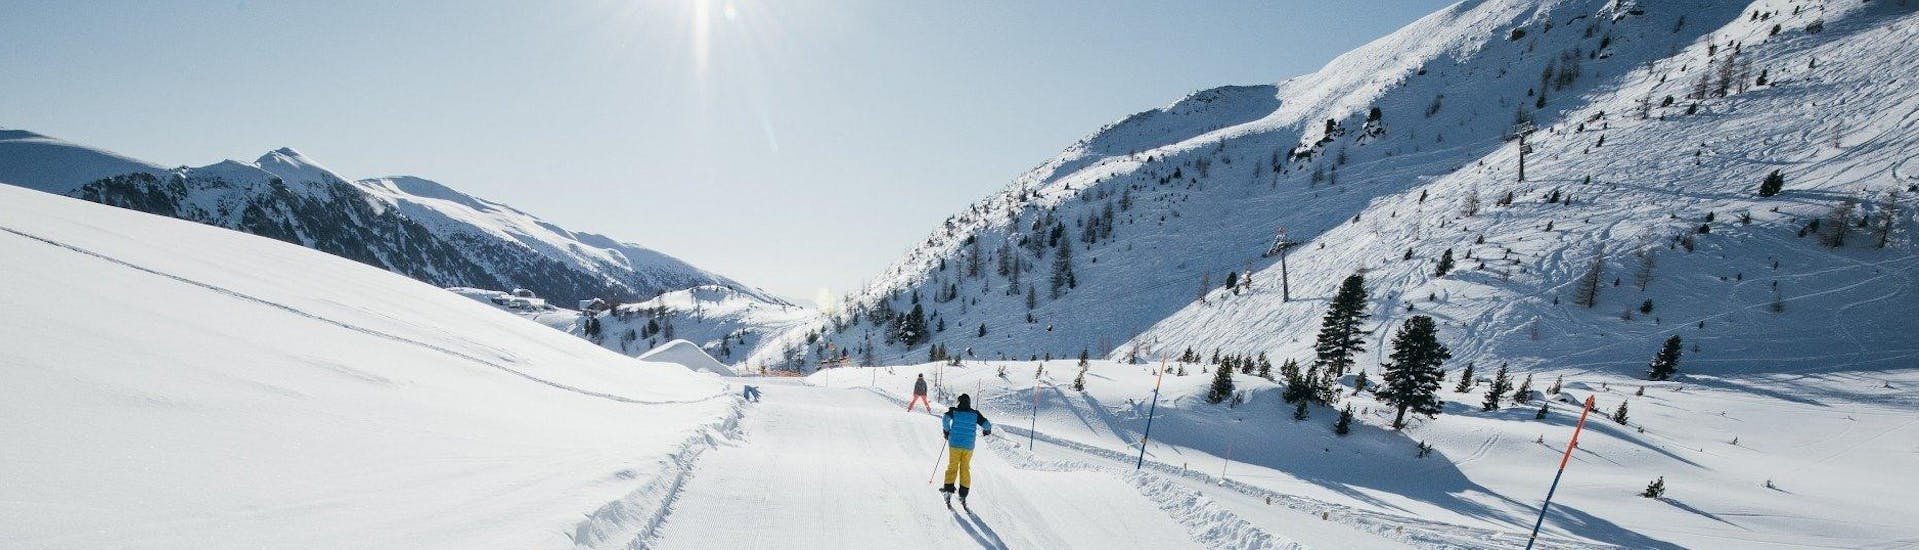 Adultes et enfants skiant dans la station de ski de Turracher.